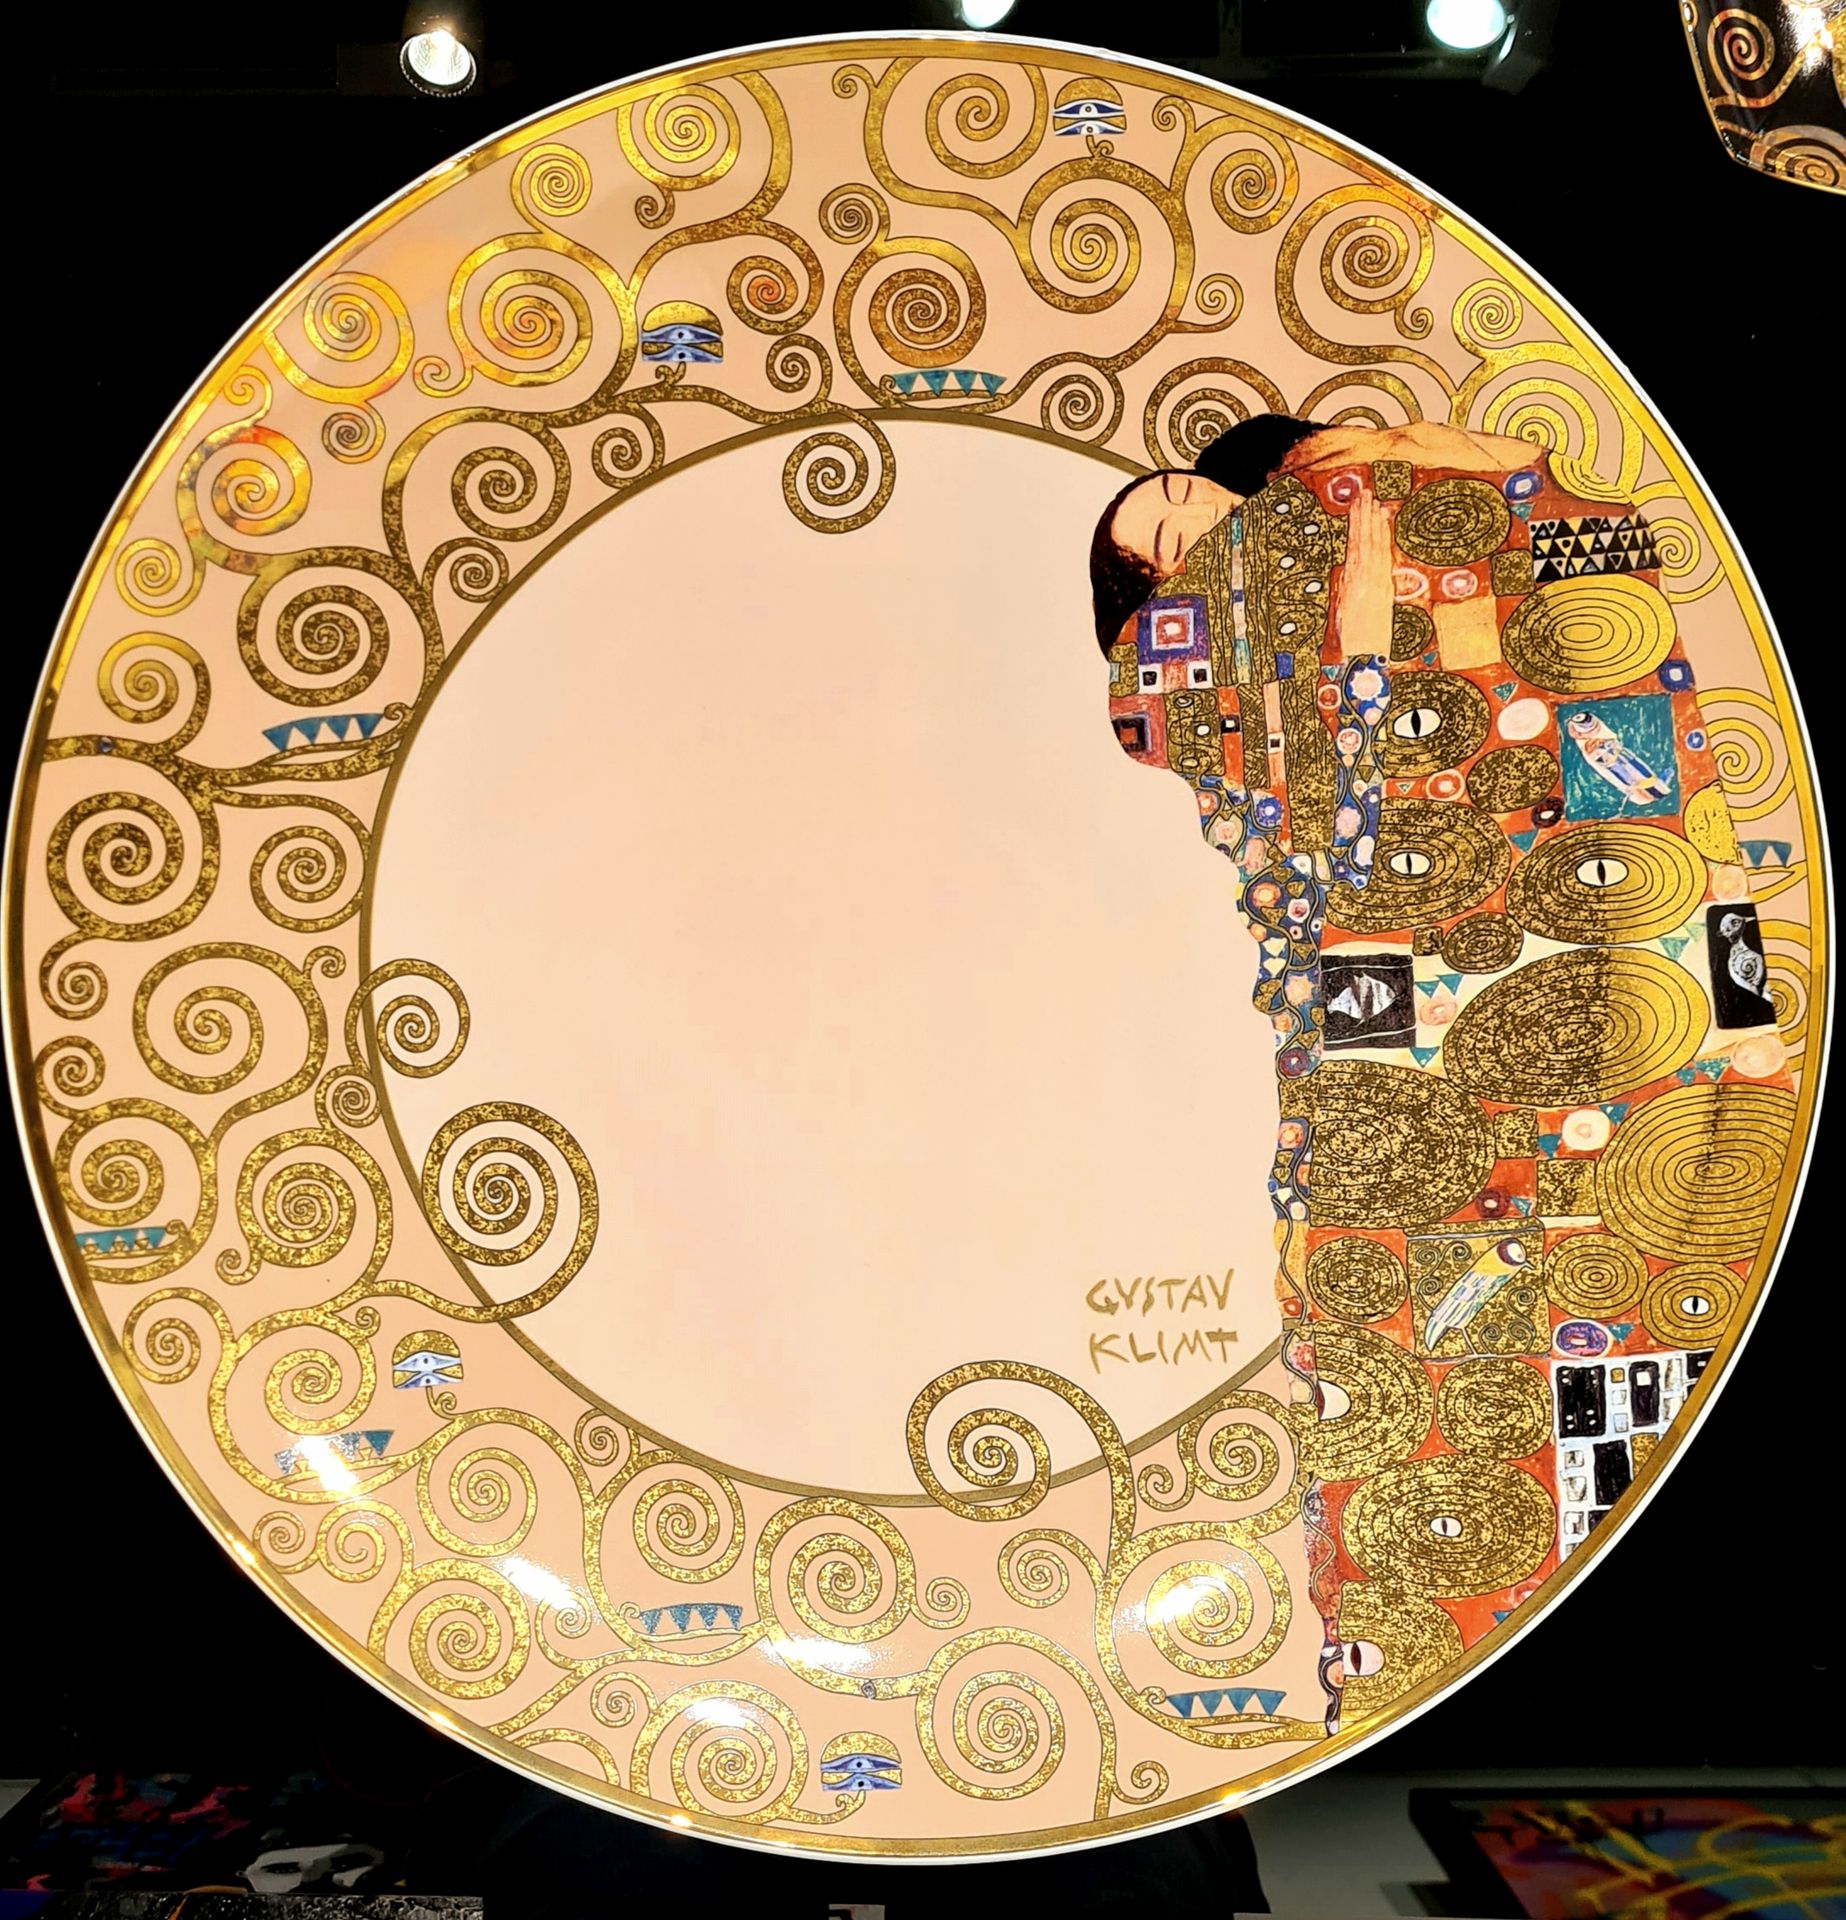 Assiette en porcelaine Porzellanteller mit einem Werk von Gustav Klimt.

In der &hellip;